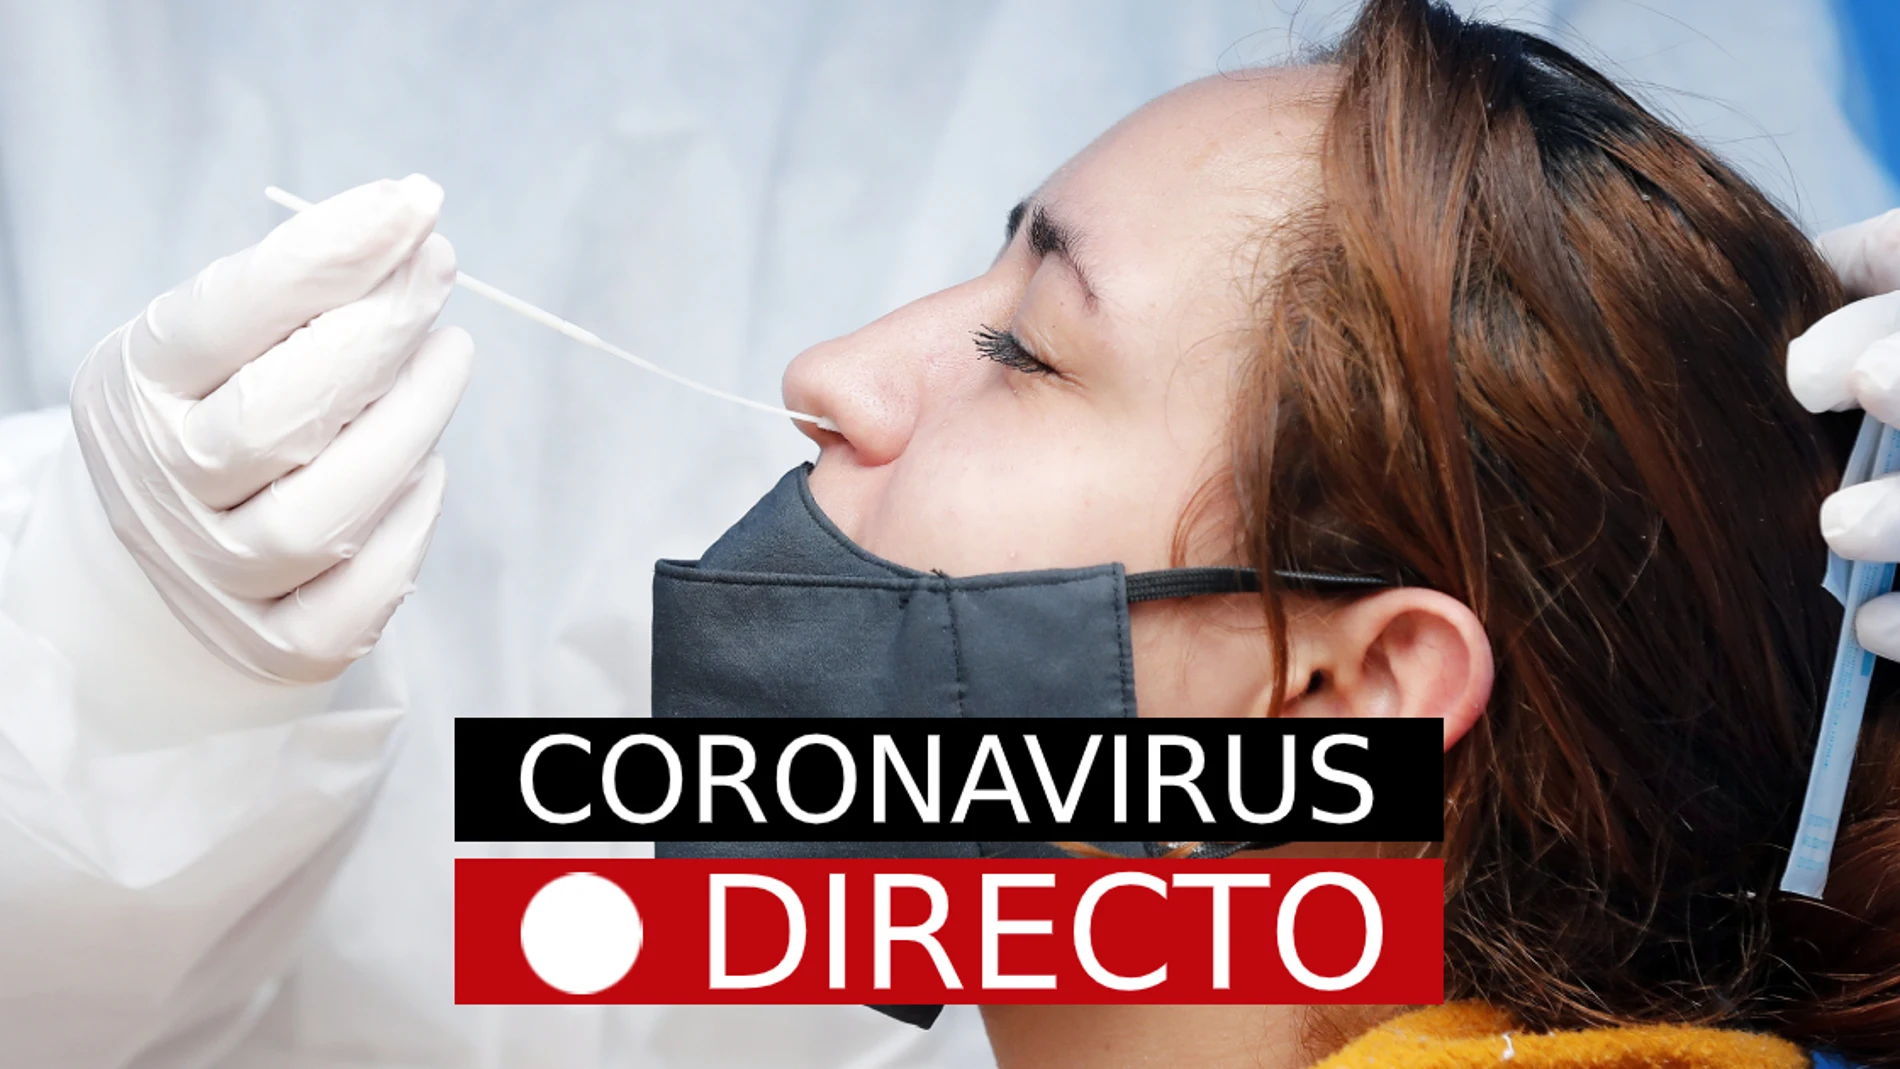 La incidencia de coronavirus en España continúa bajando pero los expertos advierten del peligro de retirar las restricciones sin una desescalada correcta. A continuación, te contamos en directo cómo está la situación epidemiológica en nuestro país.